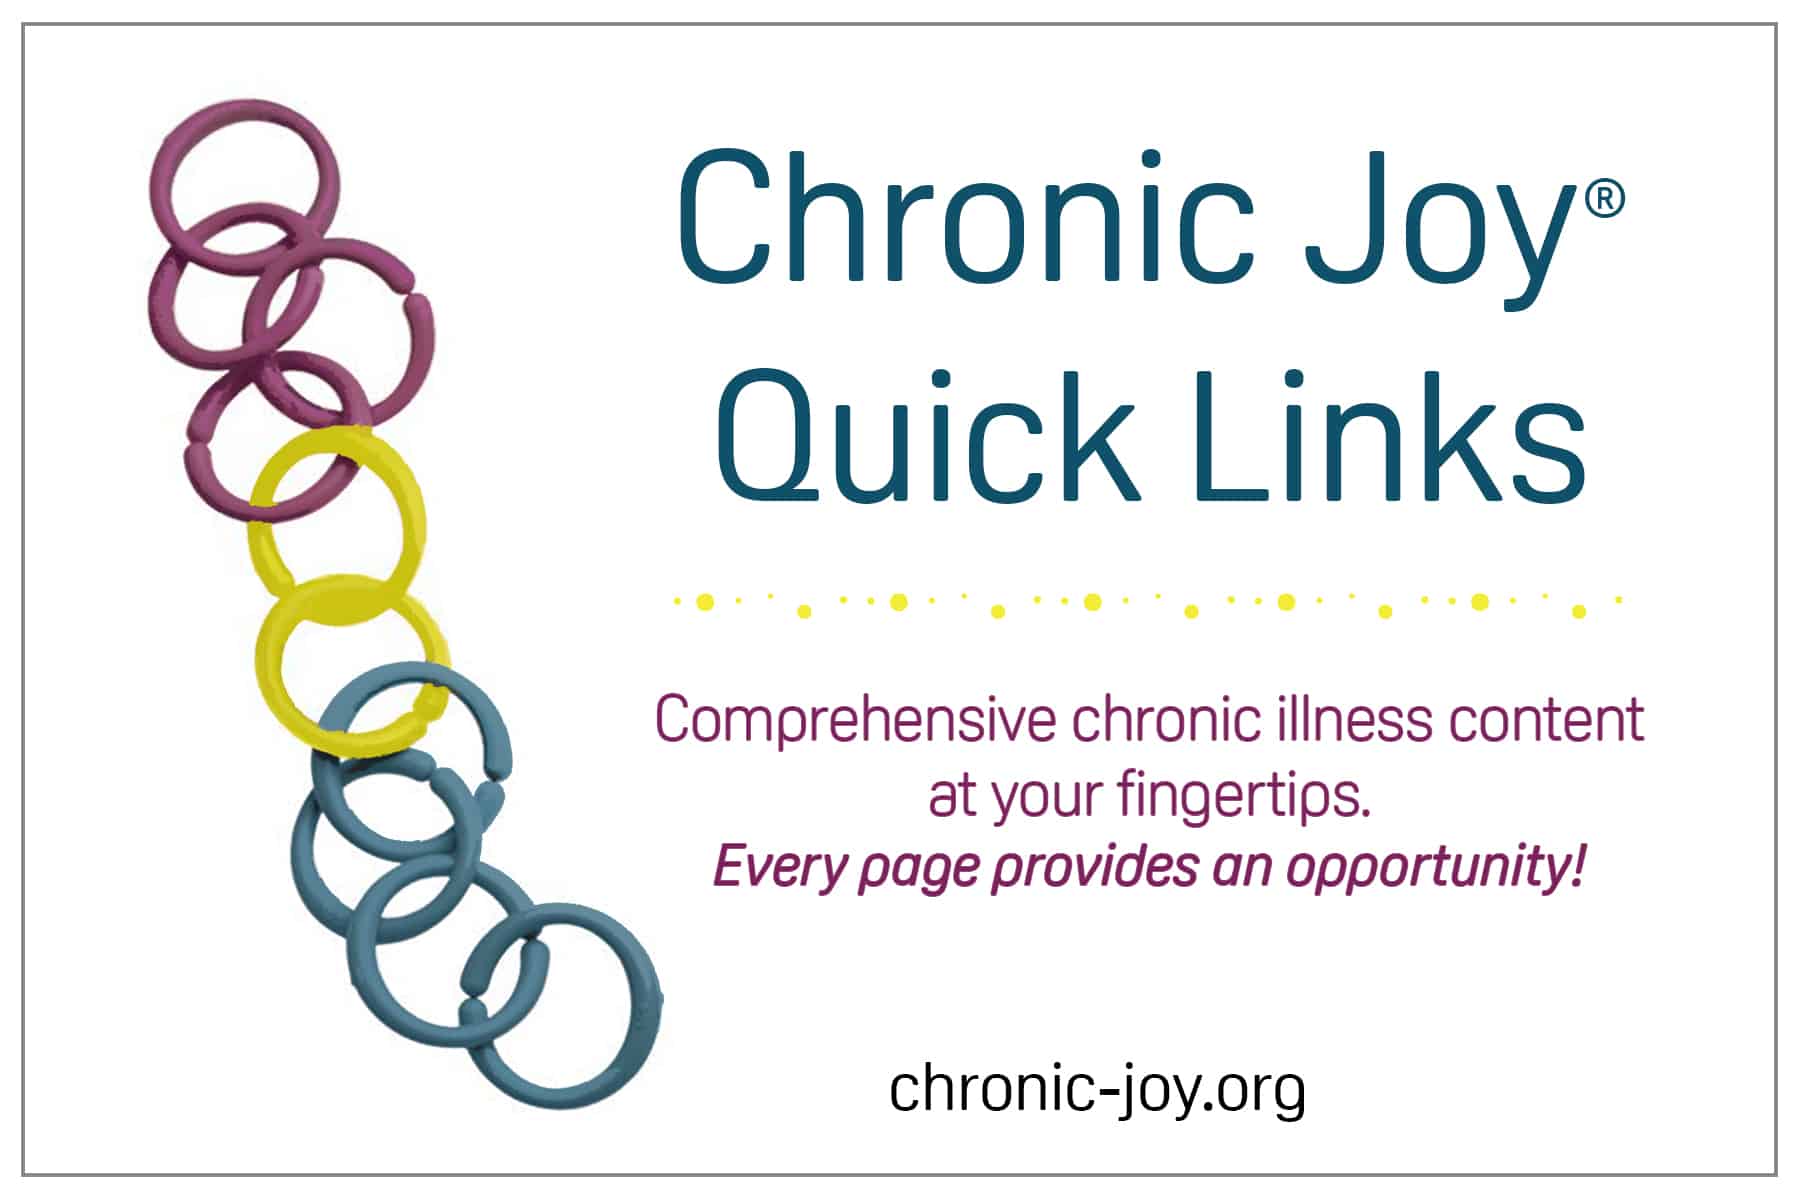 Chronic Joy® Quick Links